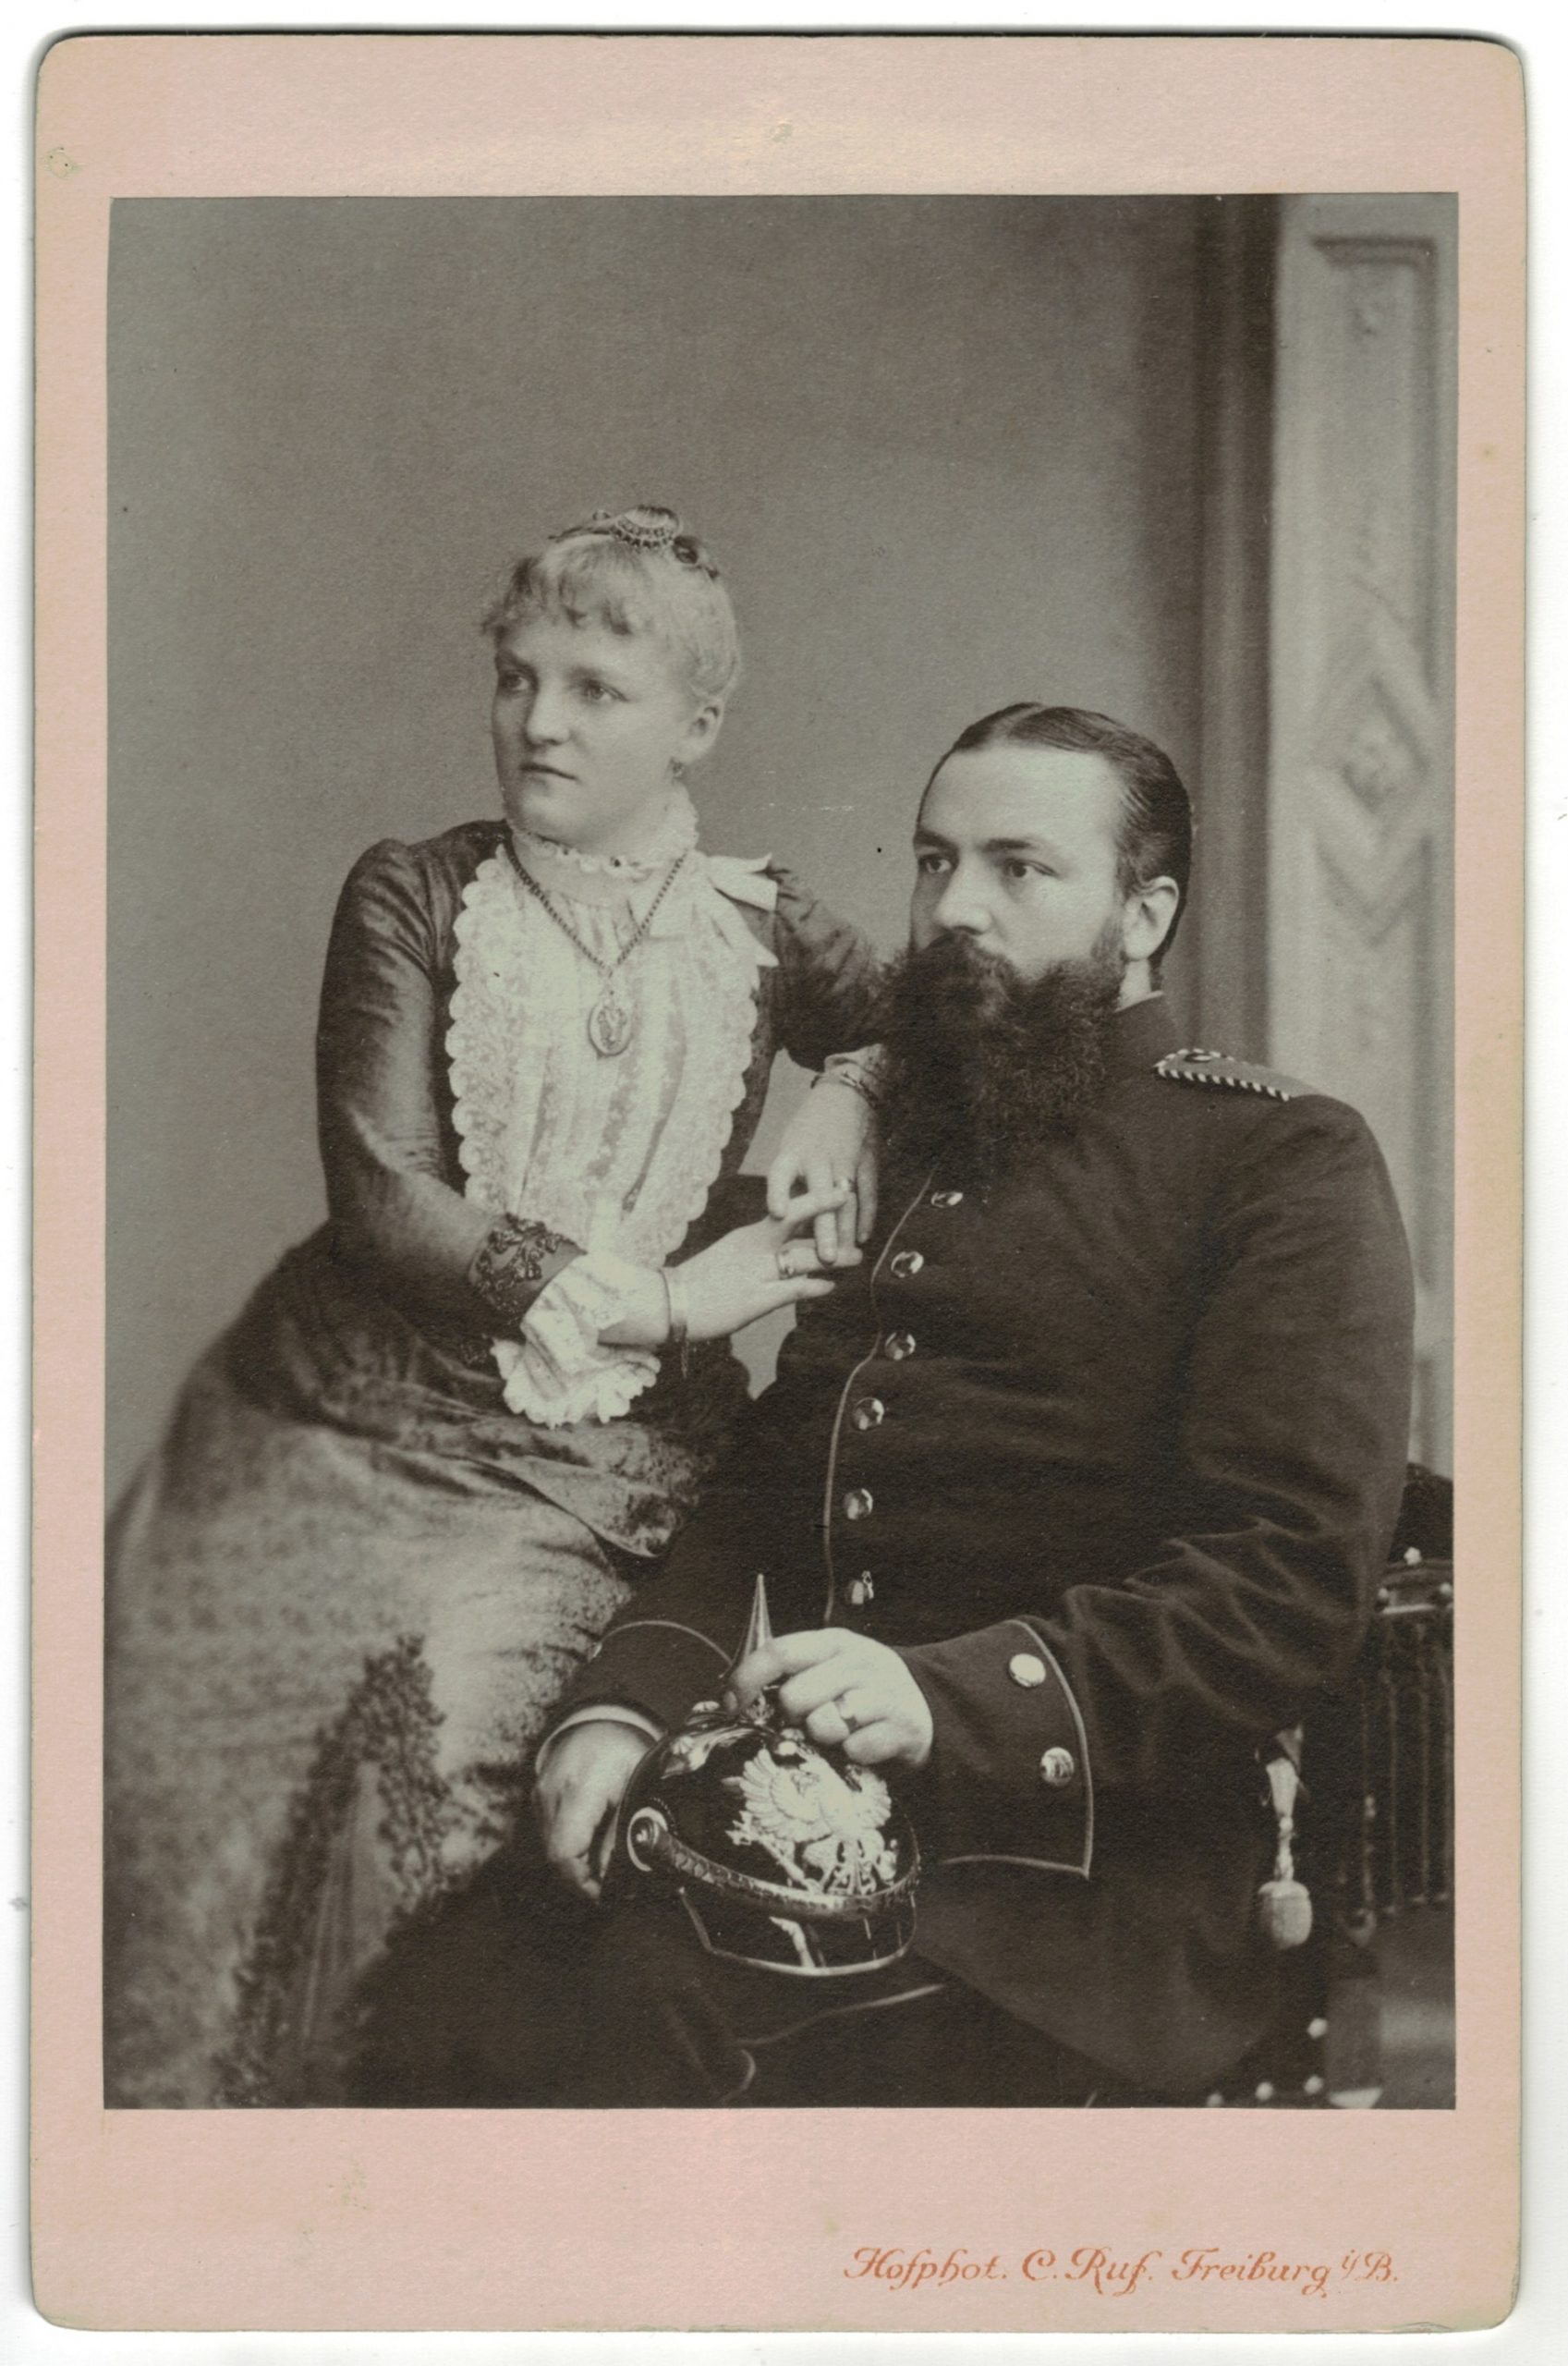 Carte CDV photo - Grand format - Soldat Allemand Freiburg fin XIX début XX en compagnie de sa femme. Casque à pointe.